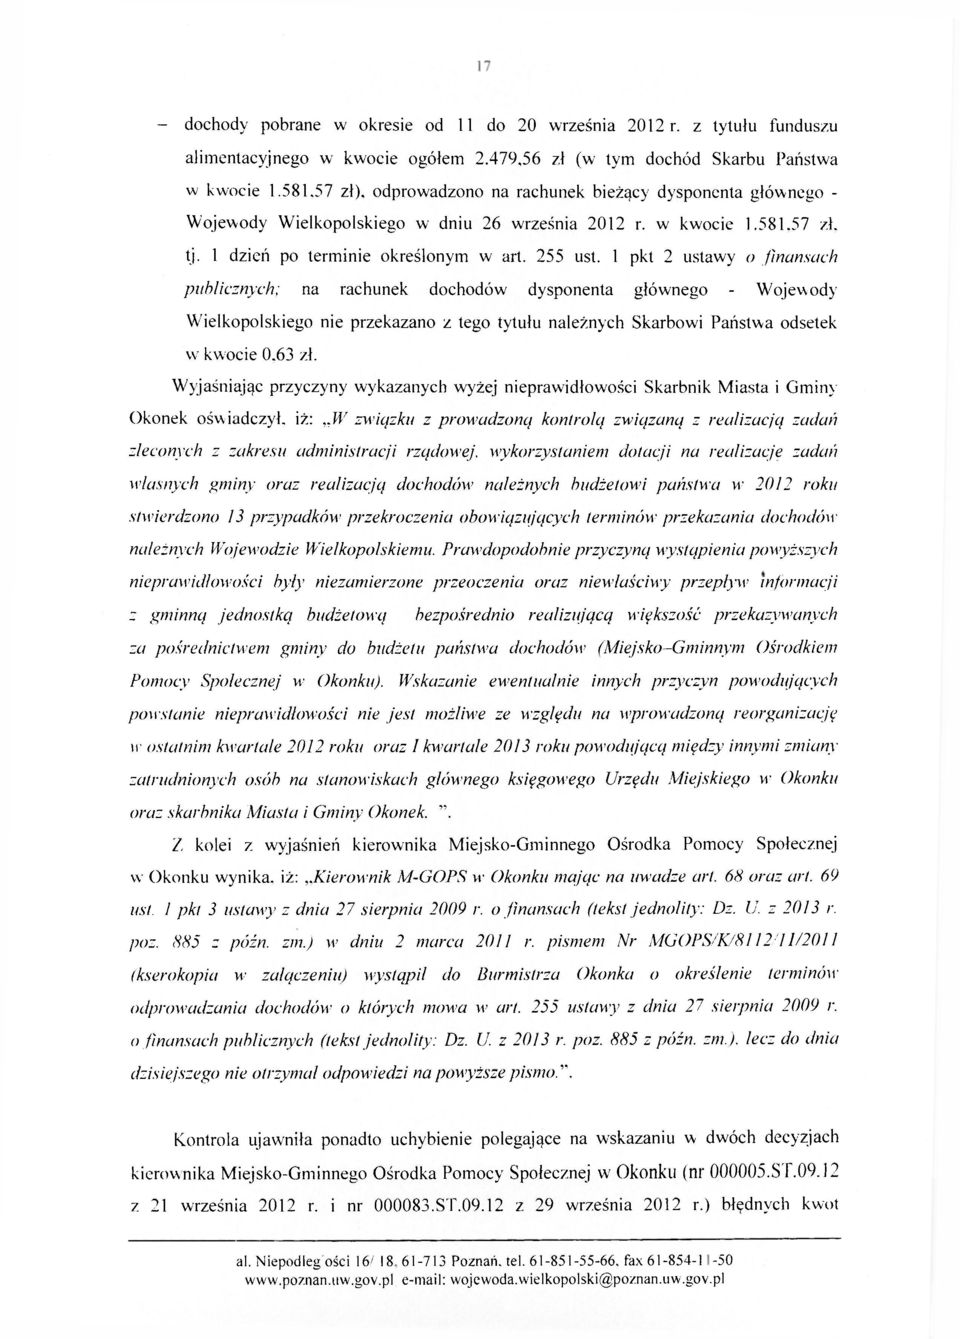 1 pkt 2 ustawy o finansach publicznych; na rachunek dochodów dysponenta głównego - Wojewody Wielkopolskiego nie przekazano z tego tytułu należnych Skarbowi Państwa odsetek w kwocie 0.63 zł.